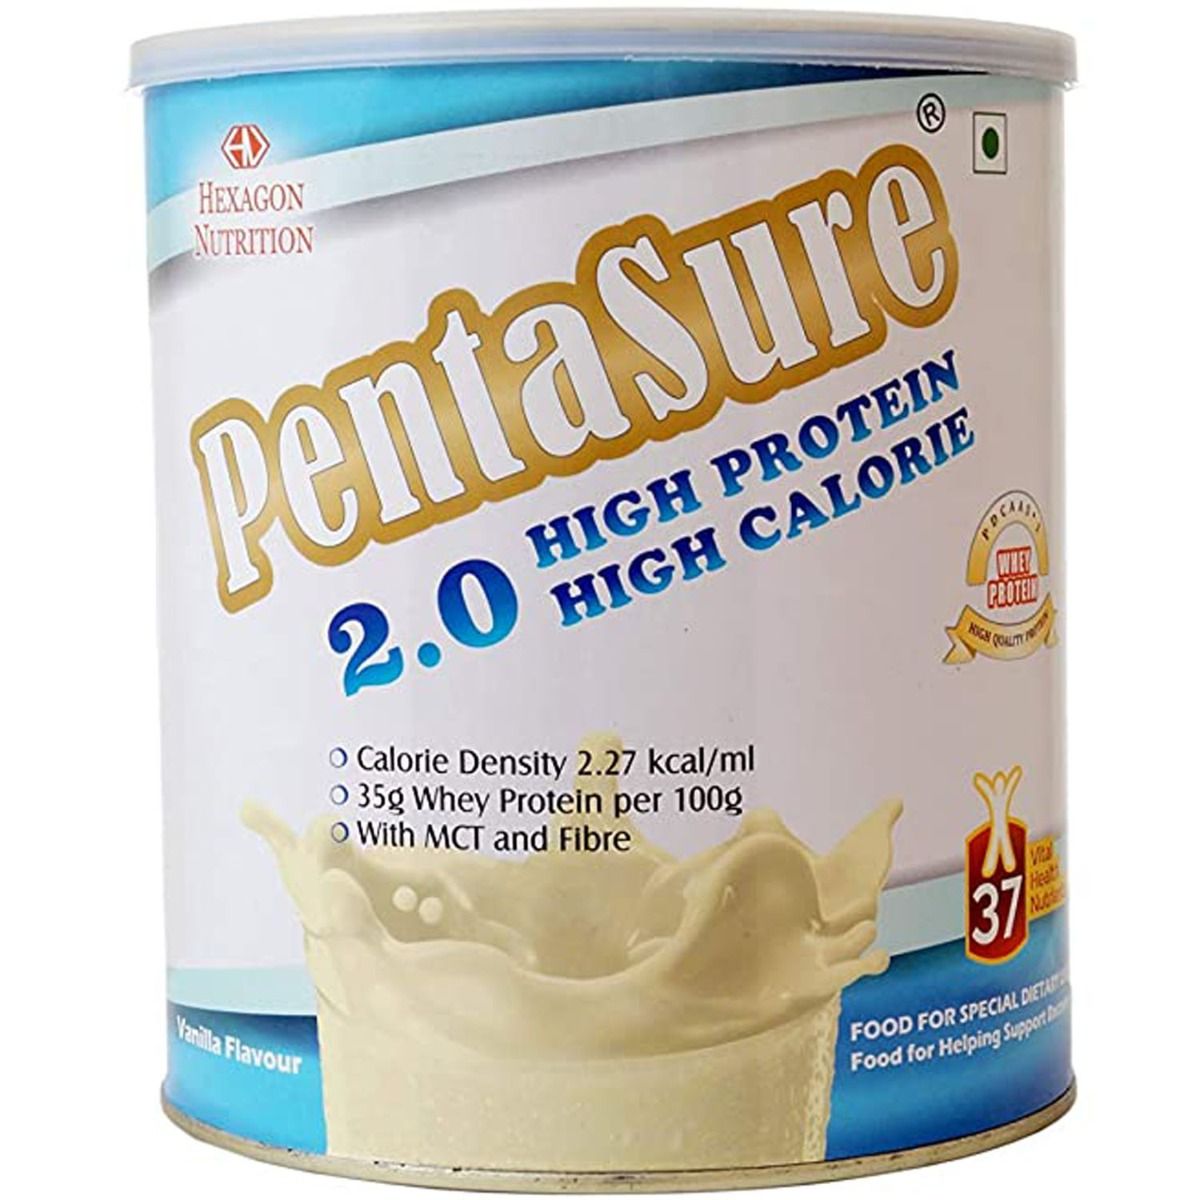 Buy Pentasure 2.0 Vanilla Flavoured High Protein Powder, 1 Kg Online